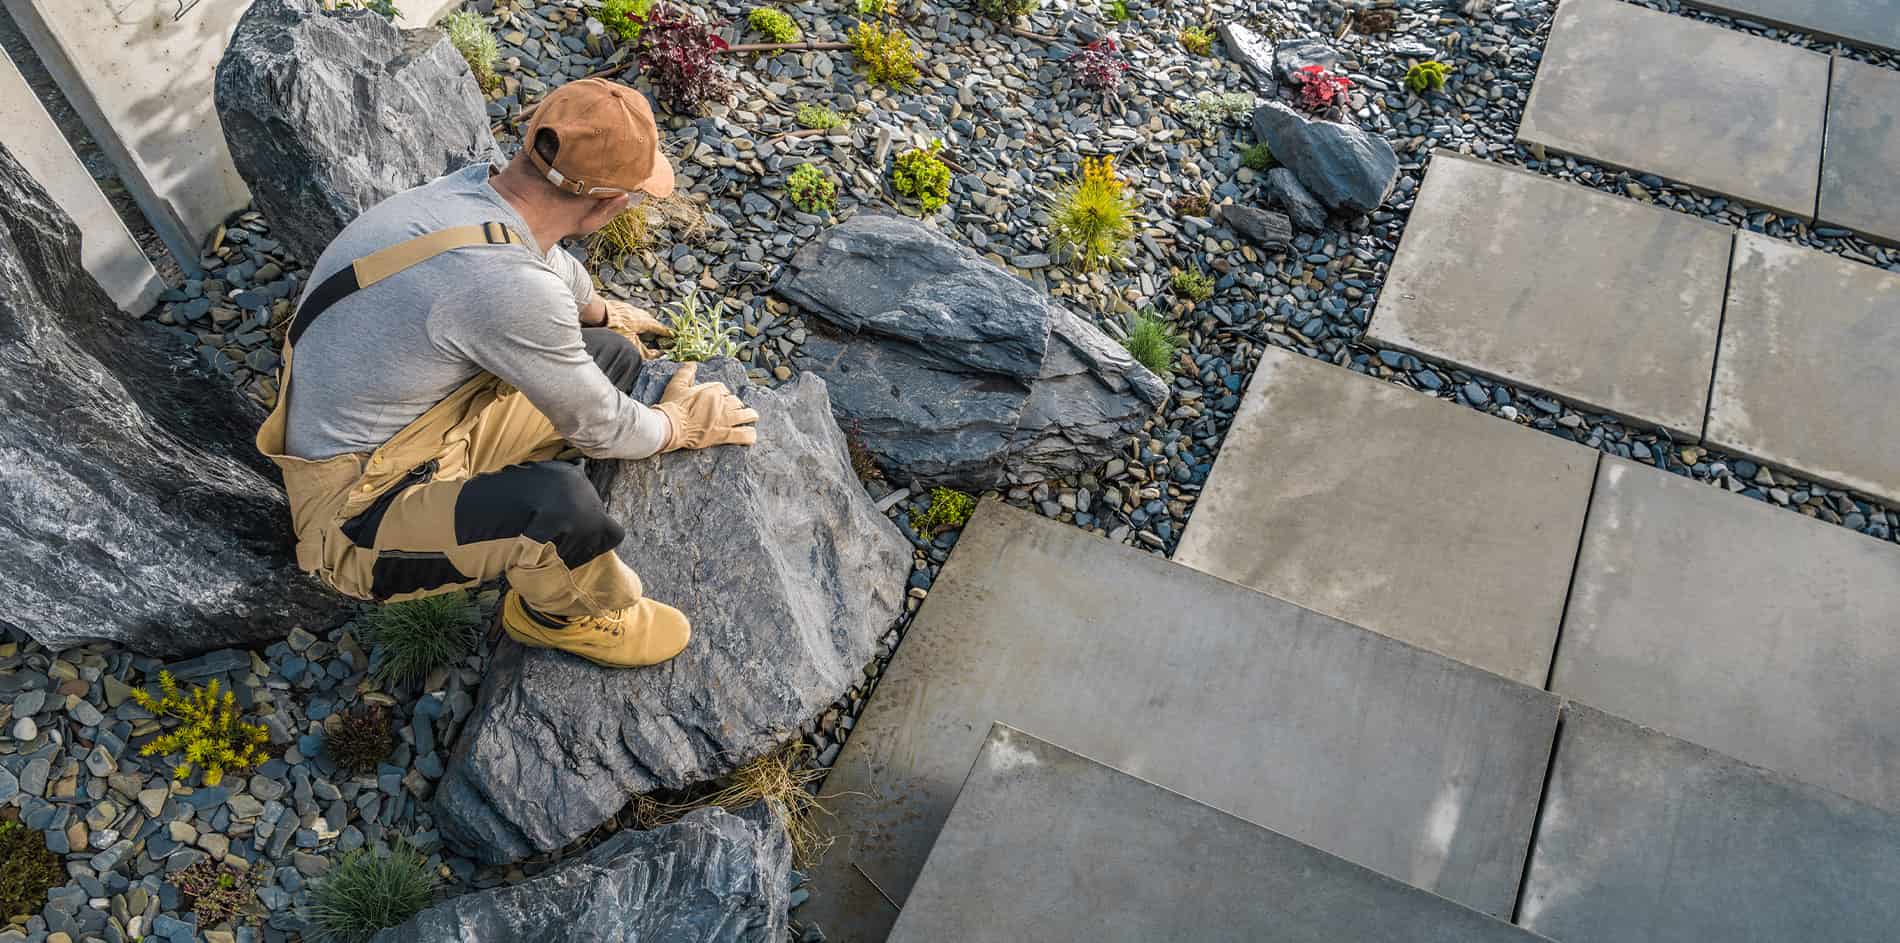 Mohsen Rezai von BR Montage begutachtet die fertiggestellten Stein und Pflasterarbeiten in einem Garten